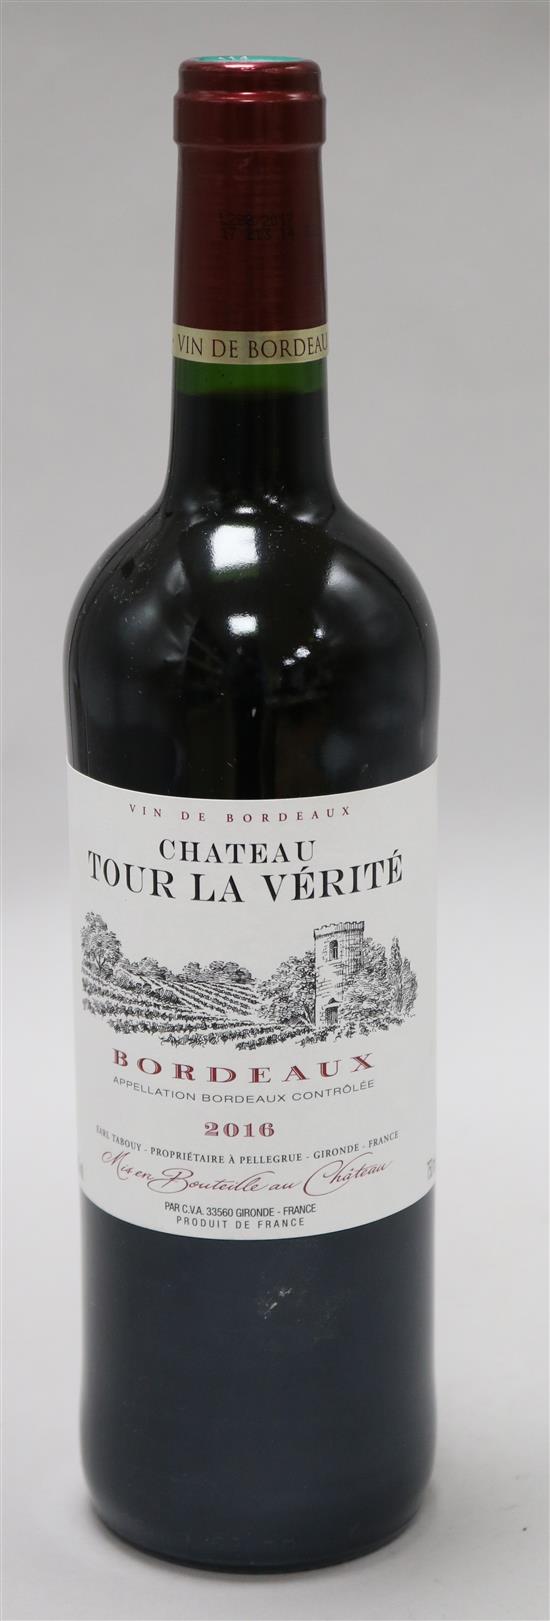 Five bottles of Chateau Tour La Verite 2016